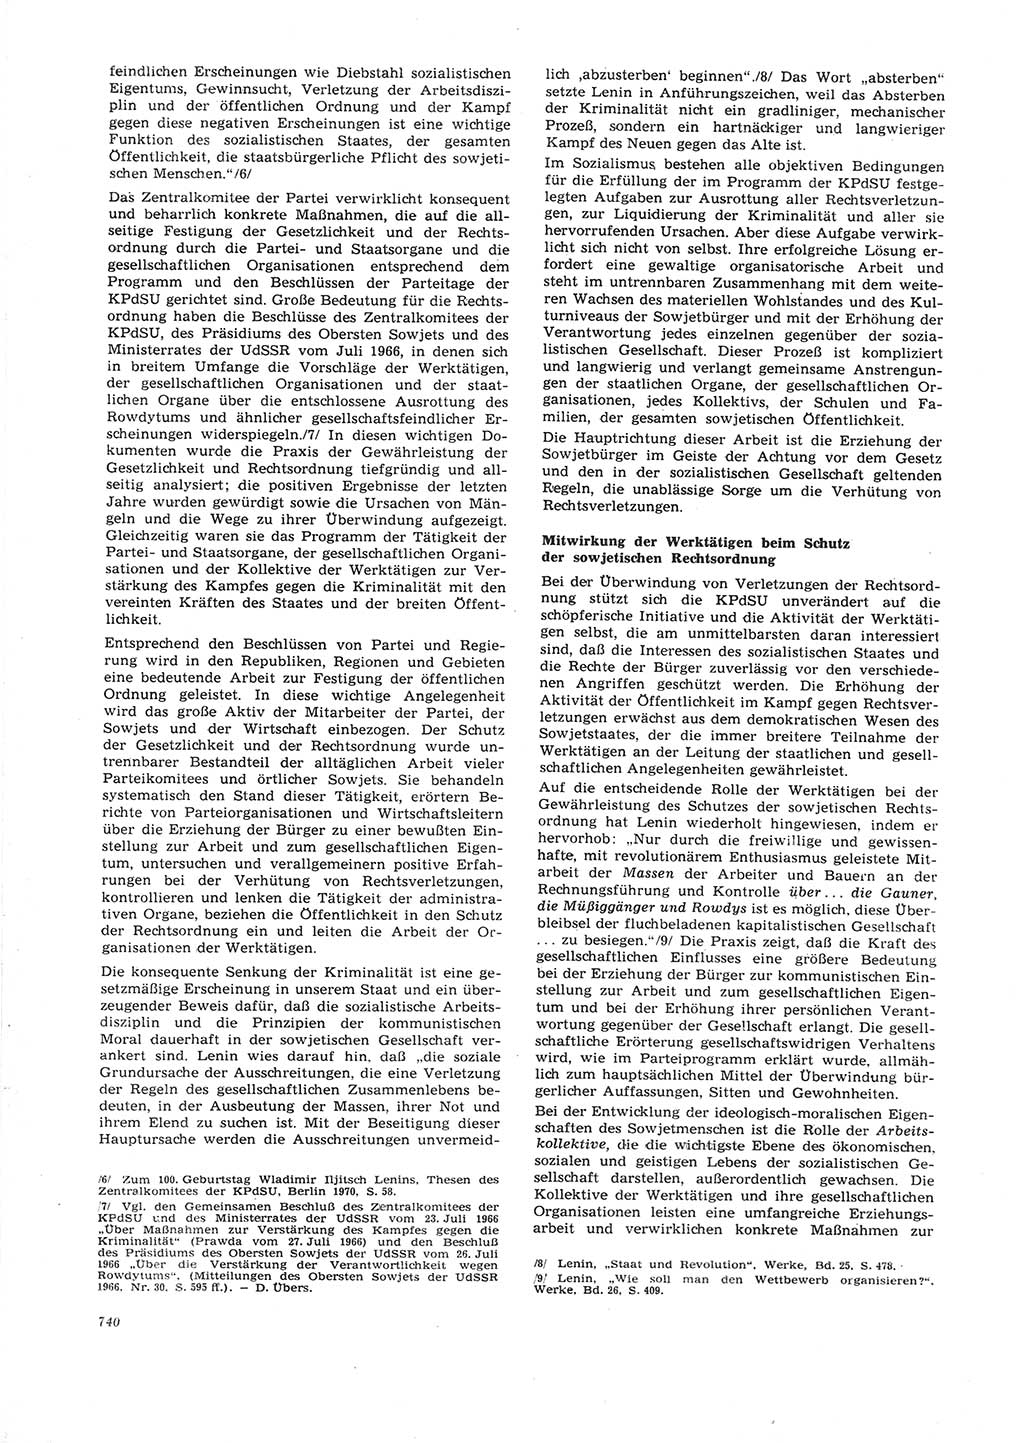 Neue Justiz (NJ), Zeitschrift für Recht und Rechtswissenschaft [Deutsche Demokratische Republik (DDR)], 26. Jahrgang 1972, Seite 740 (NJ DDR 1972, S. 740)